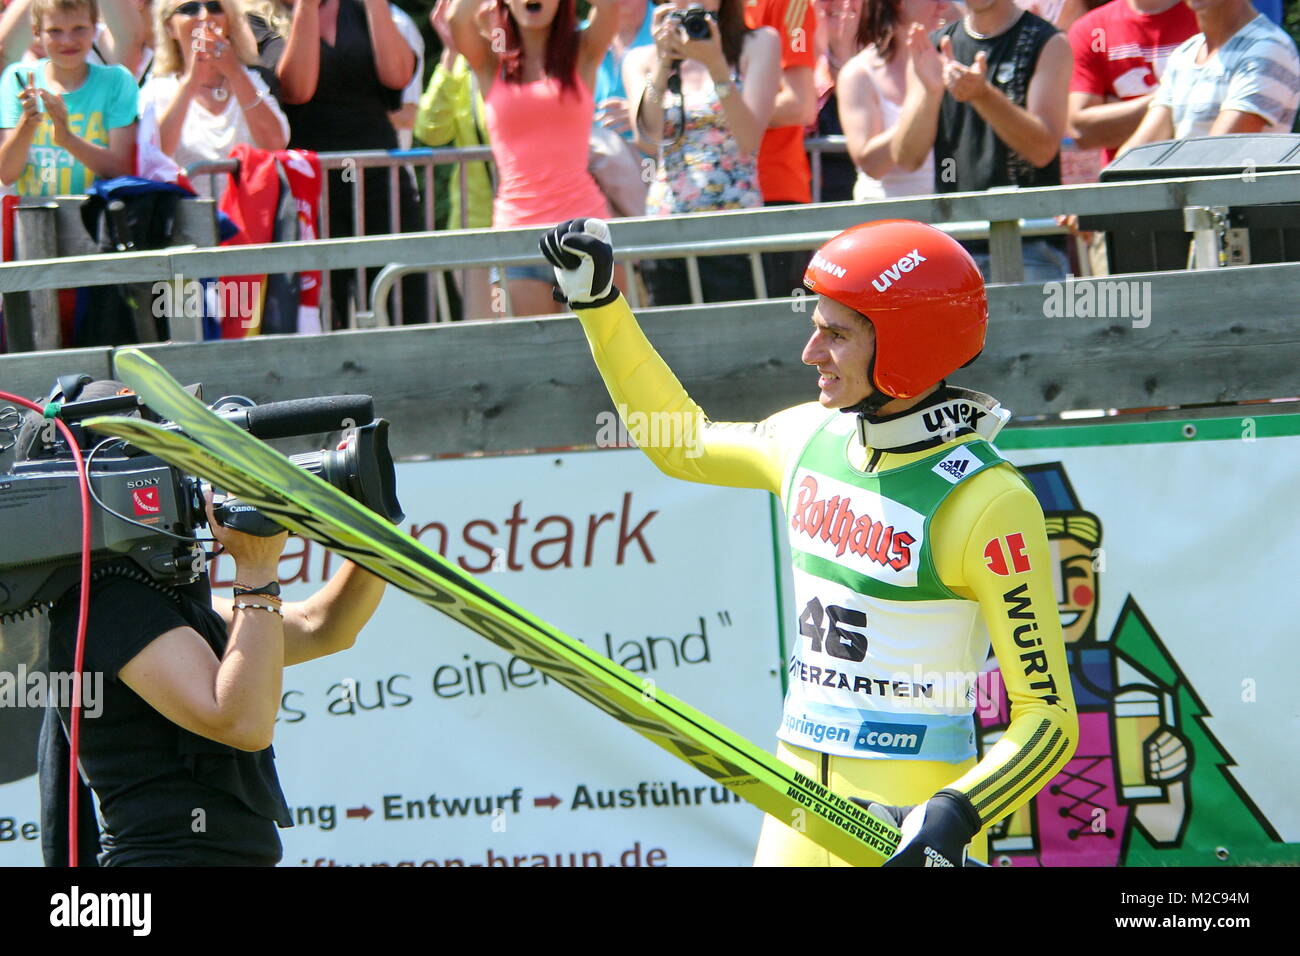 Richard Freitag freut sich über den Tagessieg beim Einzelspringen der Herren beim FIS Sommer Grand Prix 2013 en Hinterzarten Foto de stock